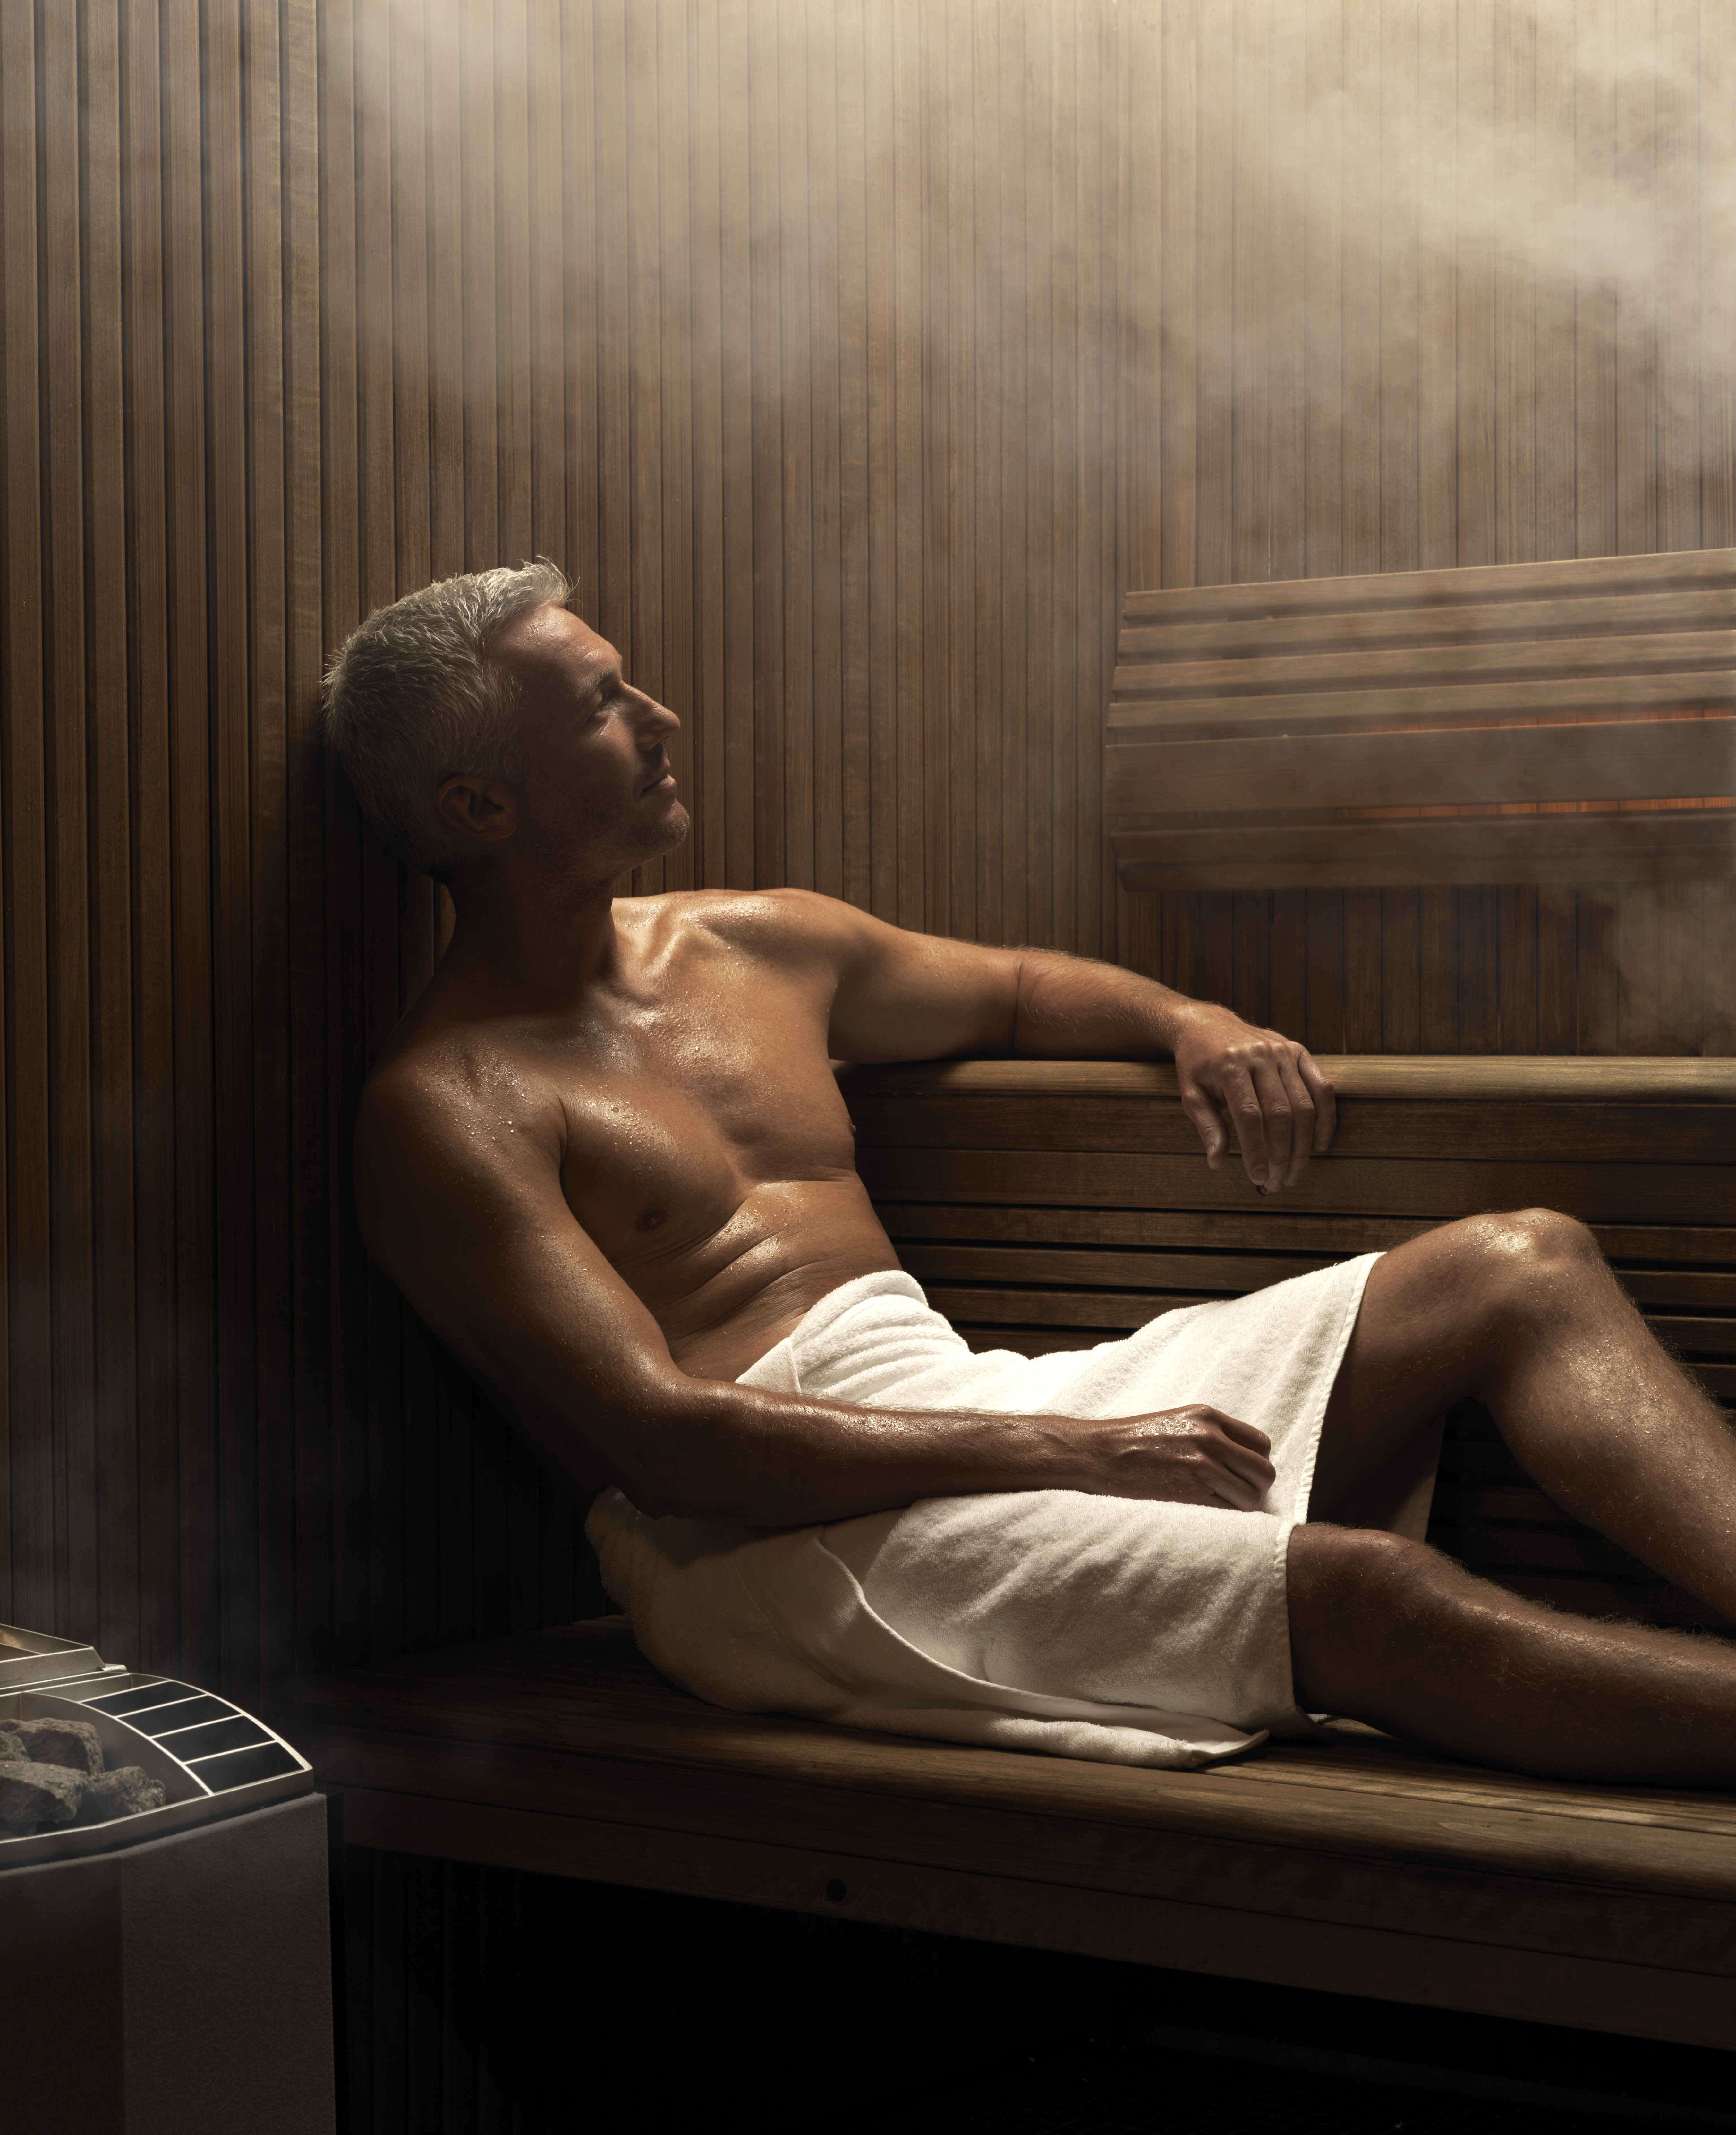 sauna traditionnelle